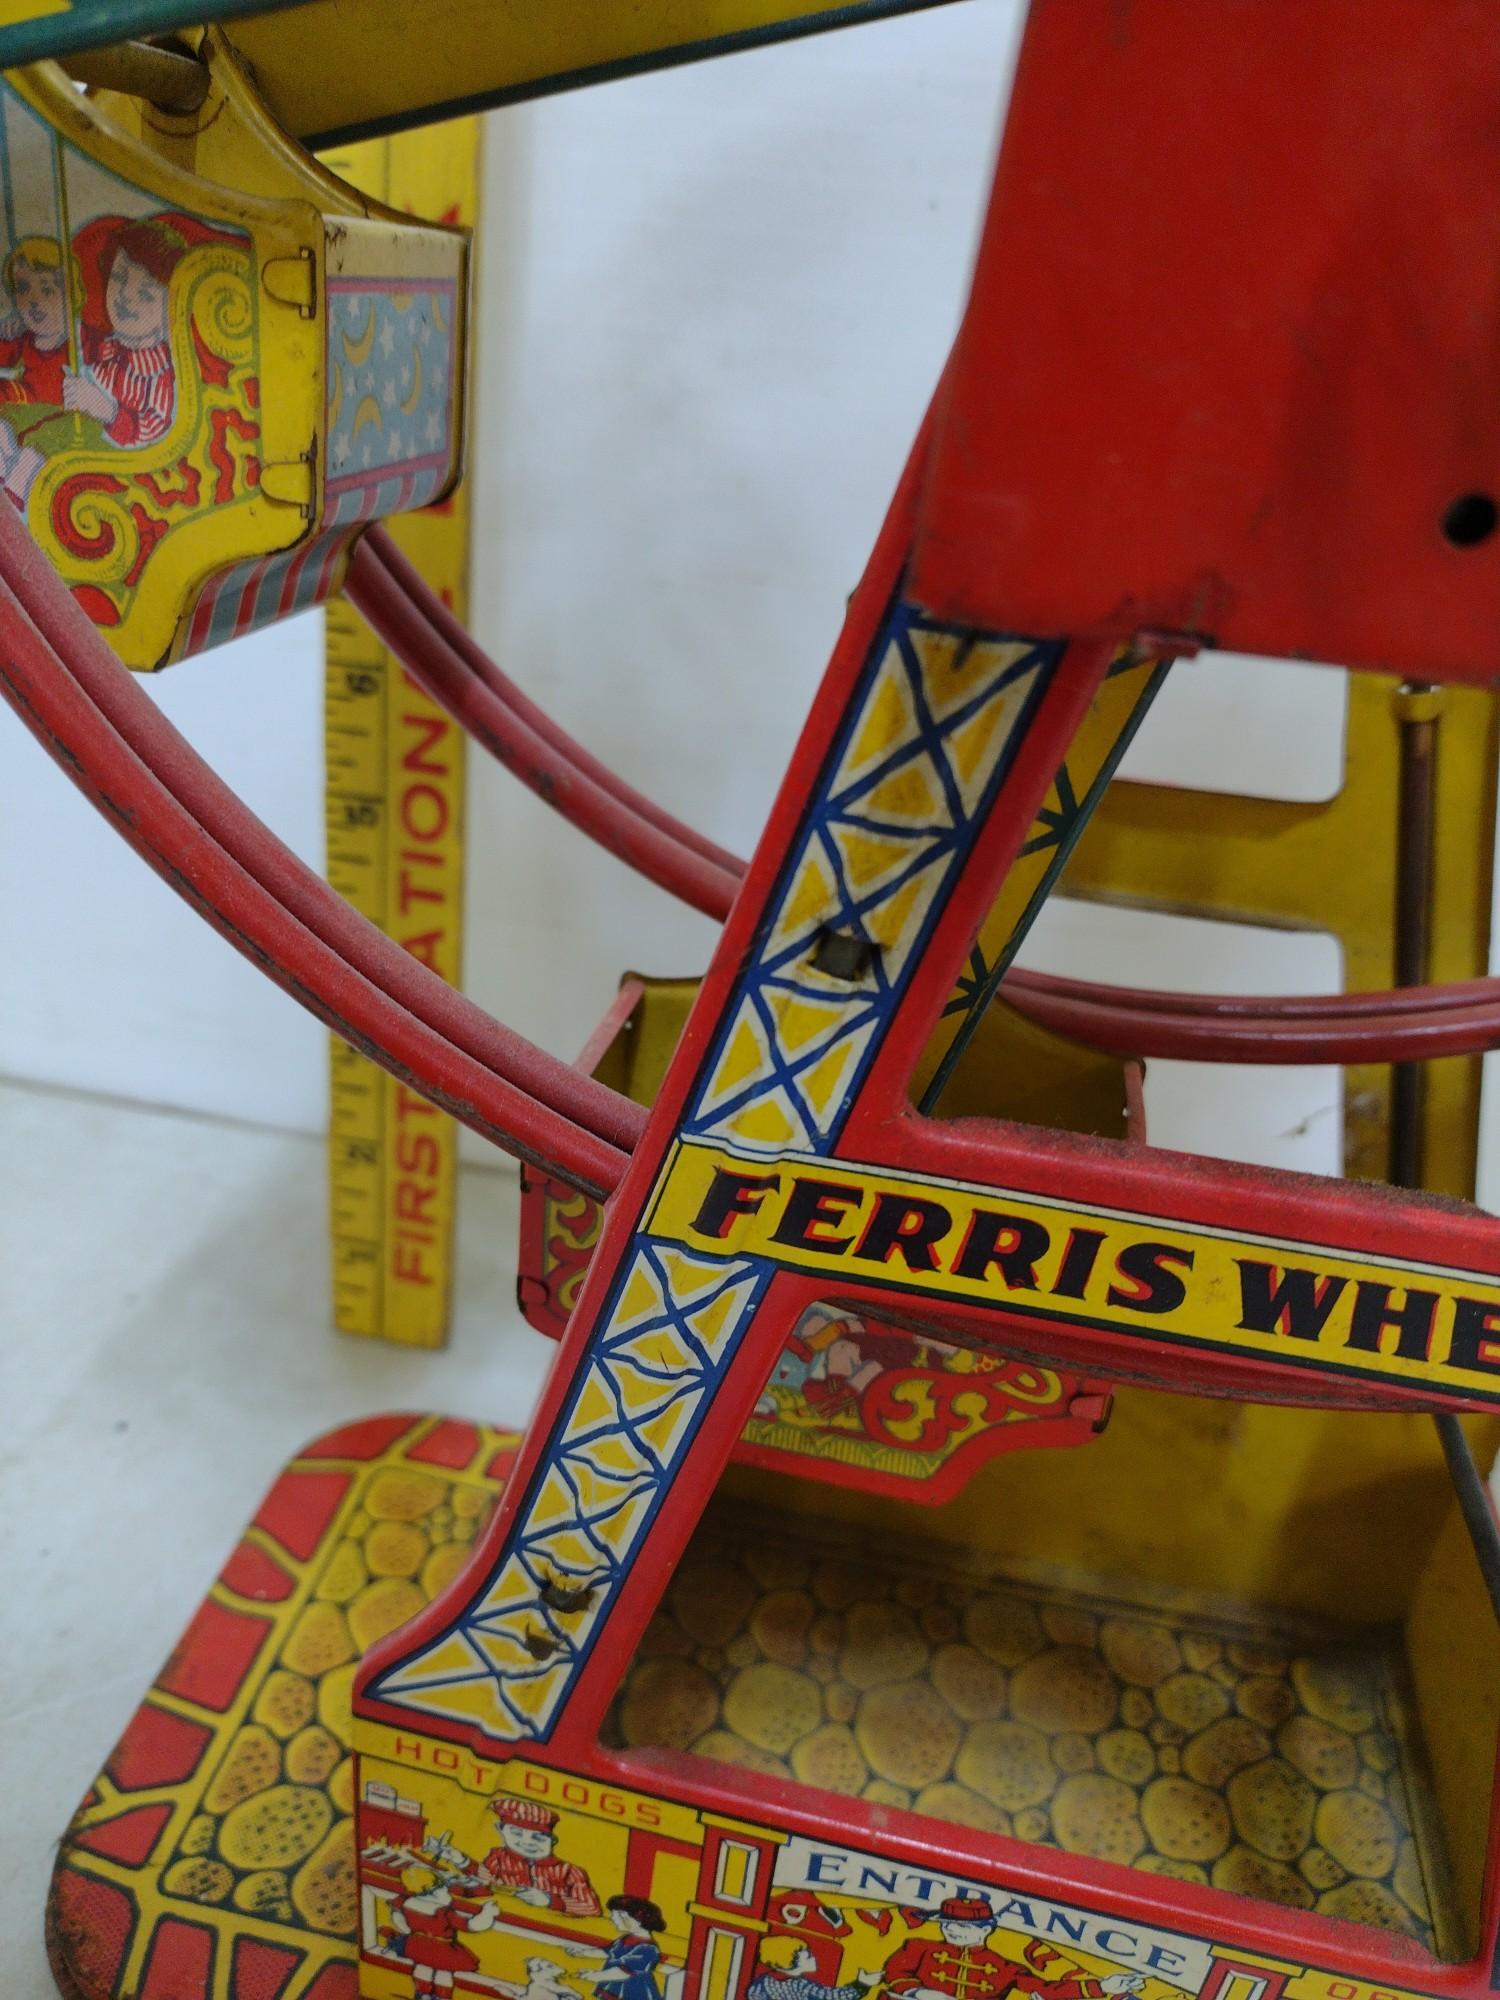 Vintage Wind-up Ferris Wheel